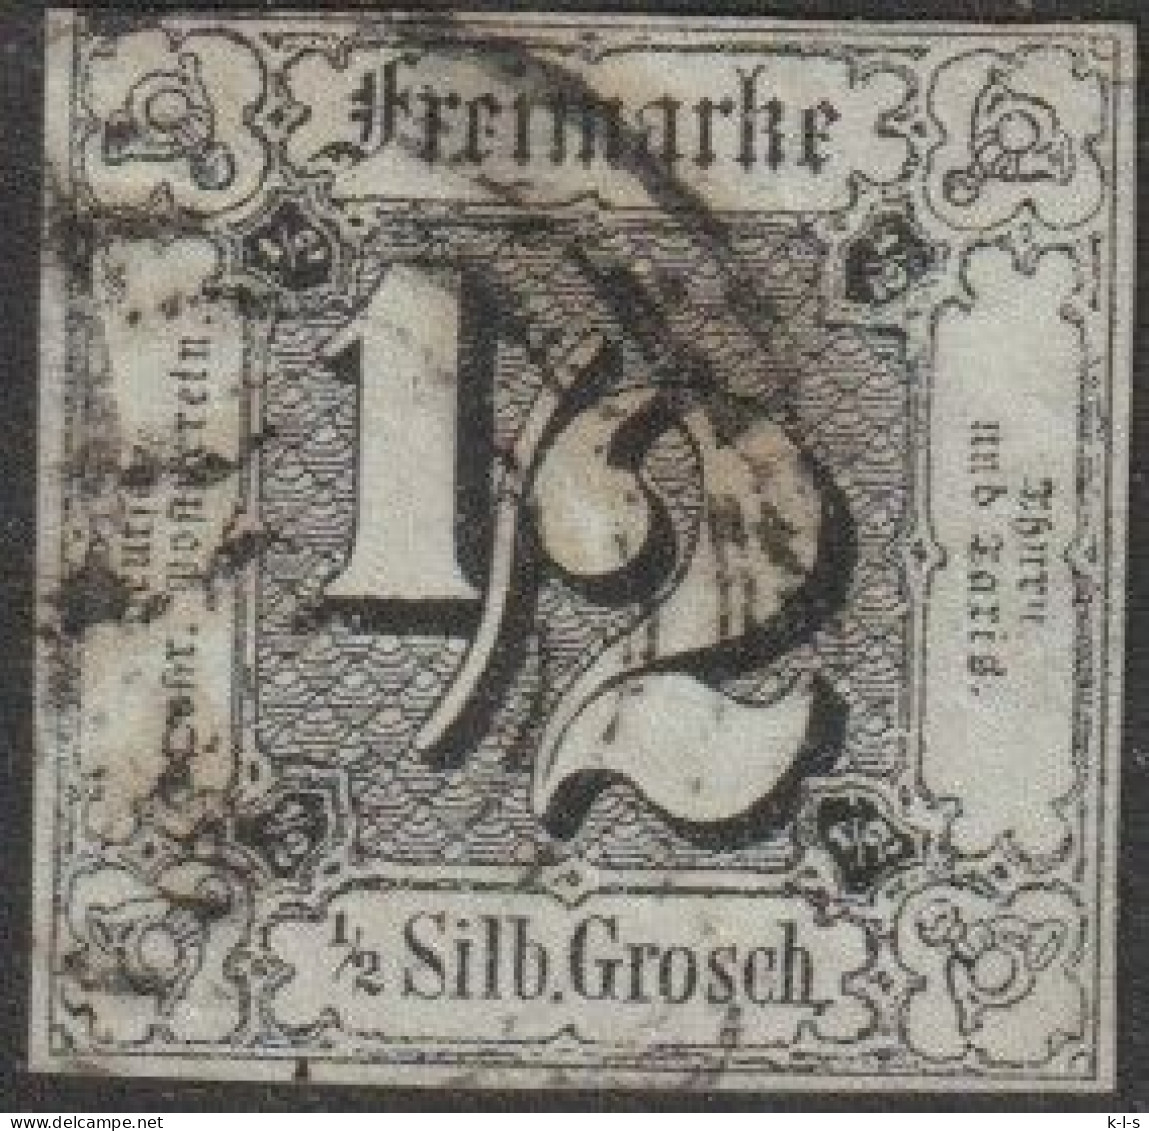 Altd.- Thurn & Taxis: 1852, Mi. Nr. 3, Freimarke: 1/2 Sgr. Ziffer Im Quadrat. Vierringstpl. - Usati